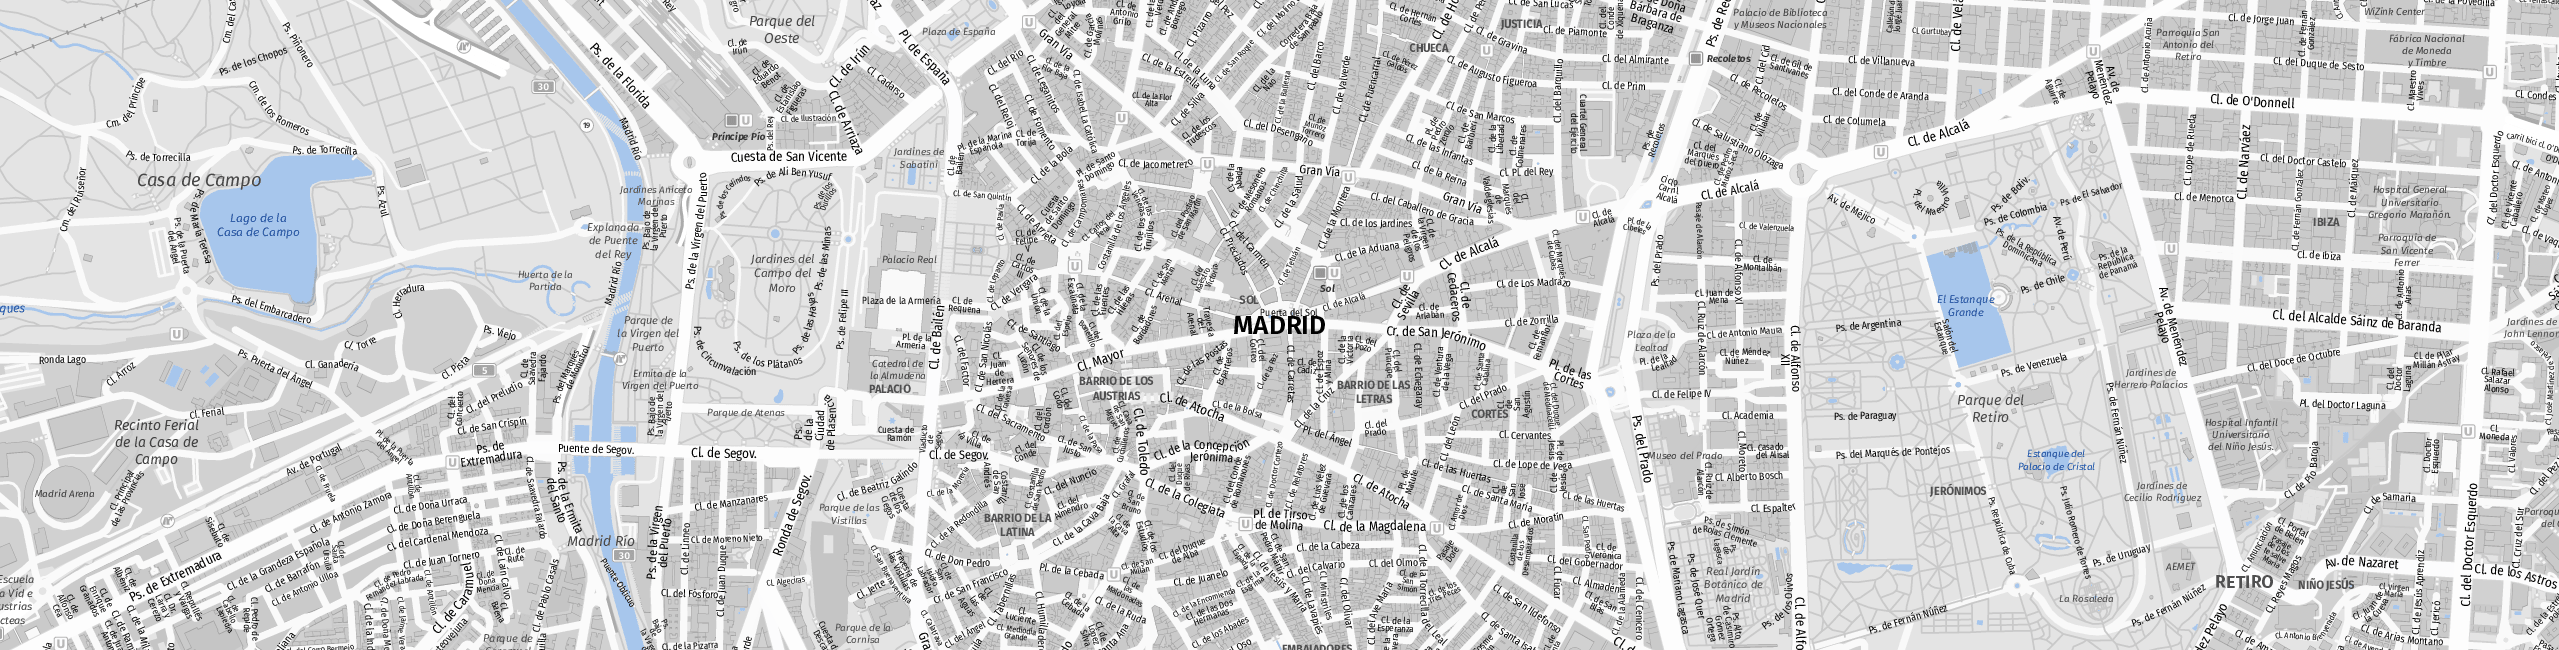 Stadtplan Madrid zum Downloaden.